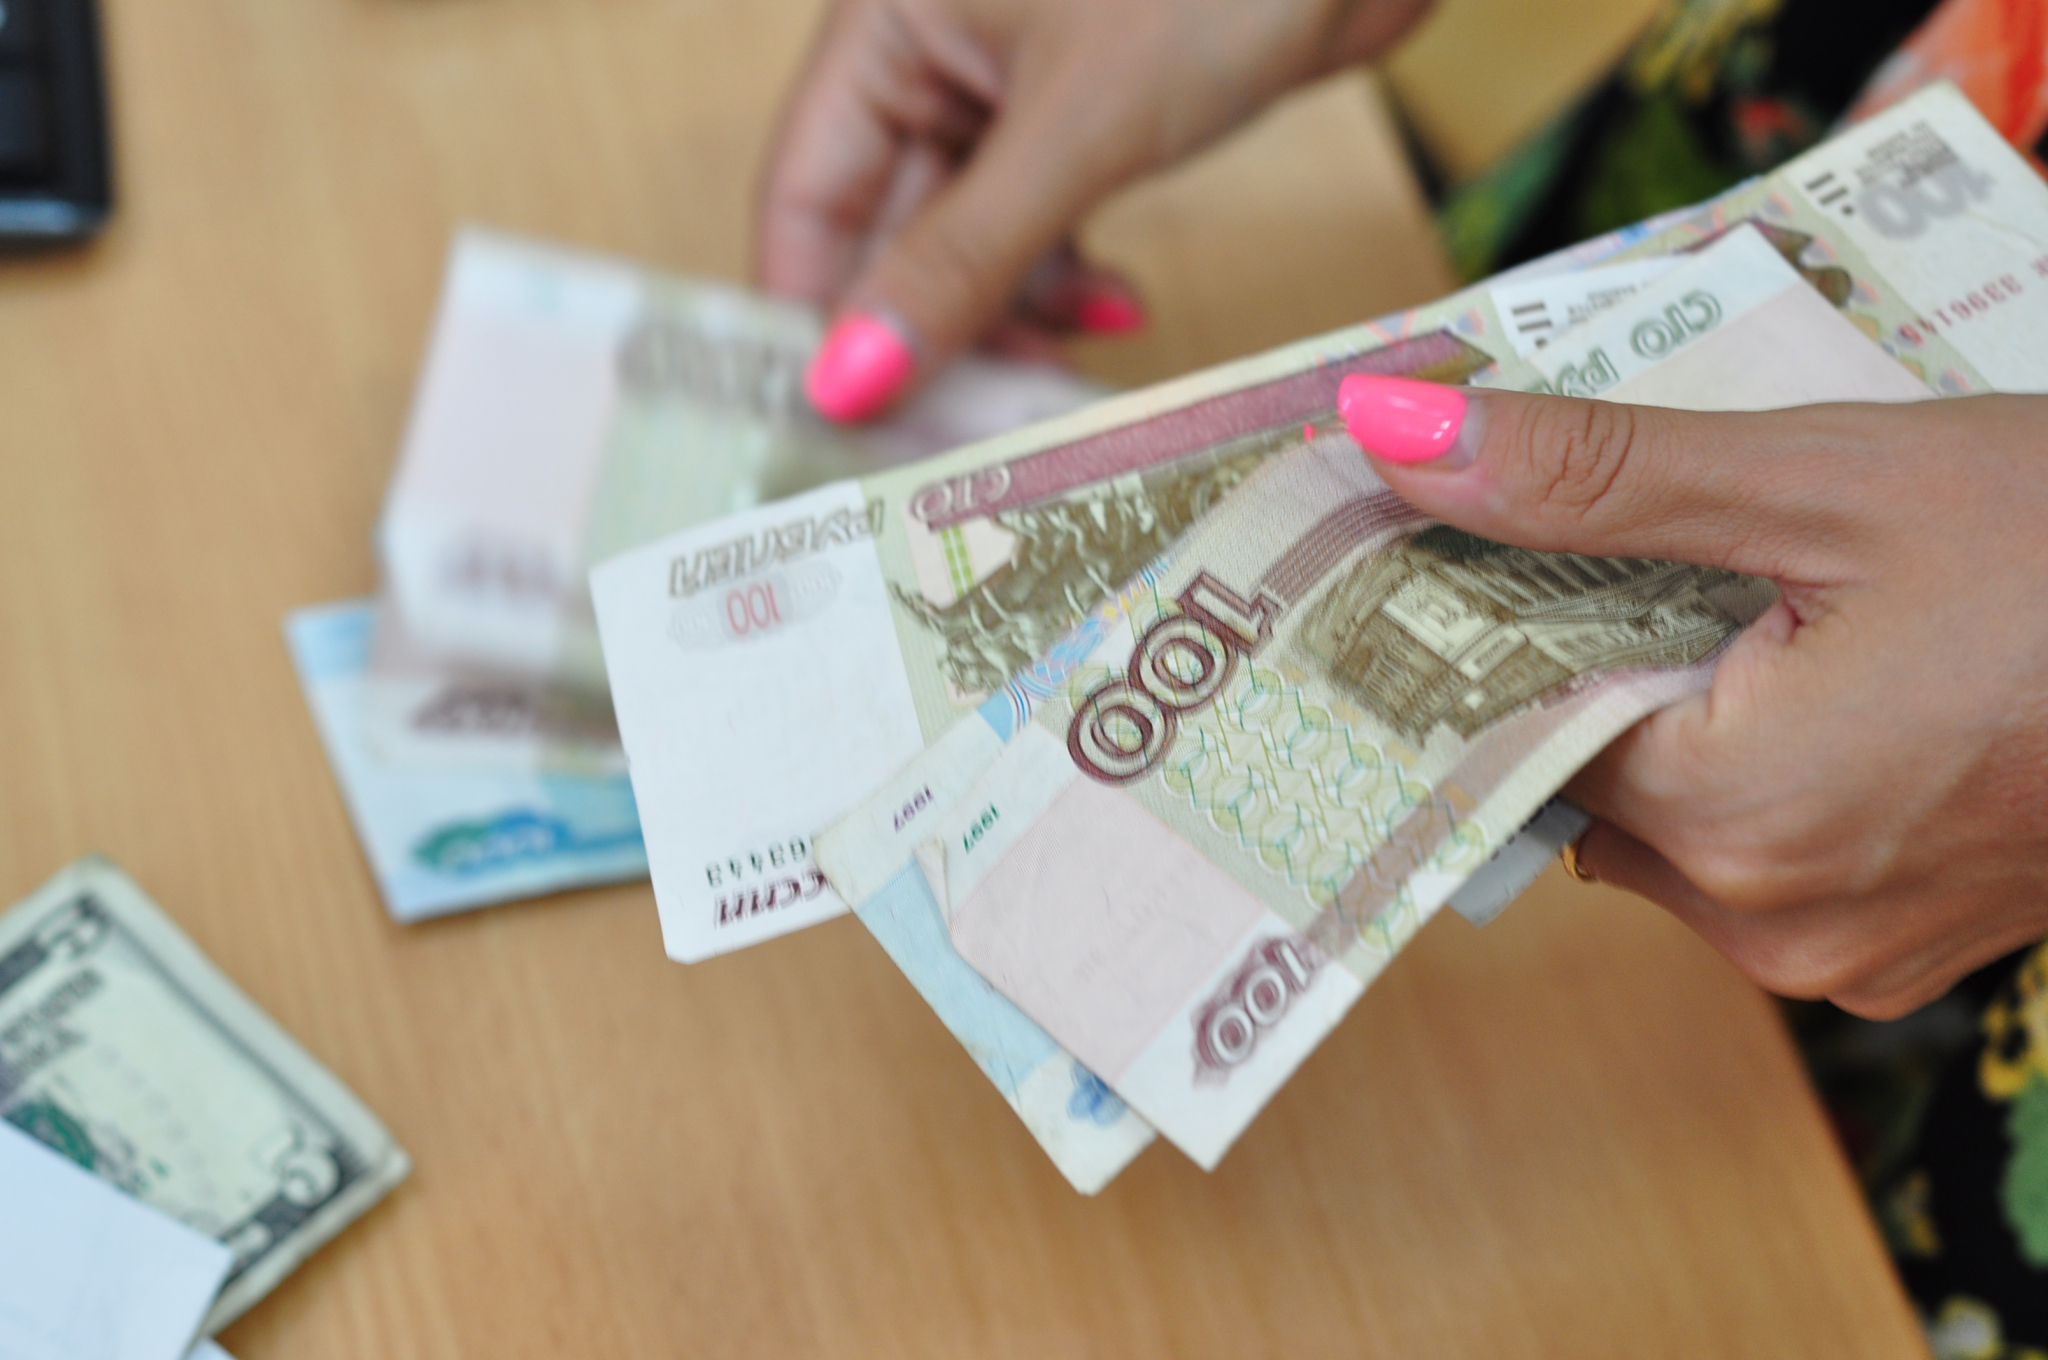 Листы тетради вместо денег: мошенница «помогла обменять» пенсионерке из Саранска 600 тысяч рублей